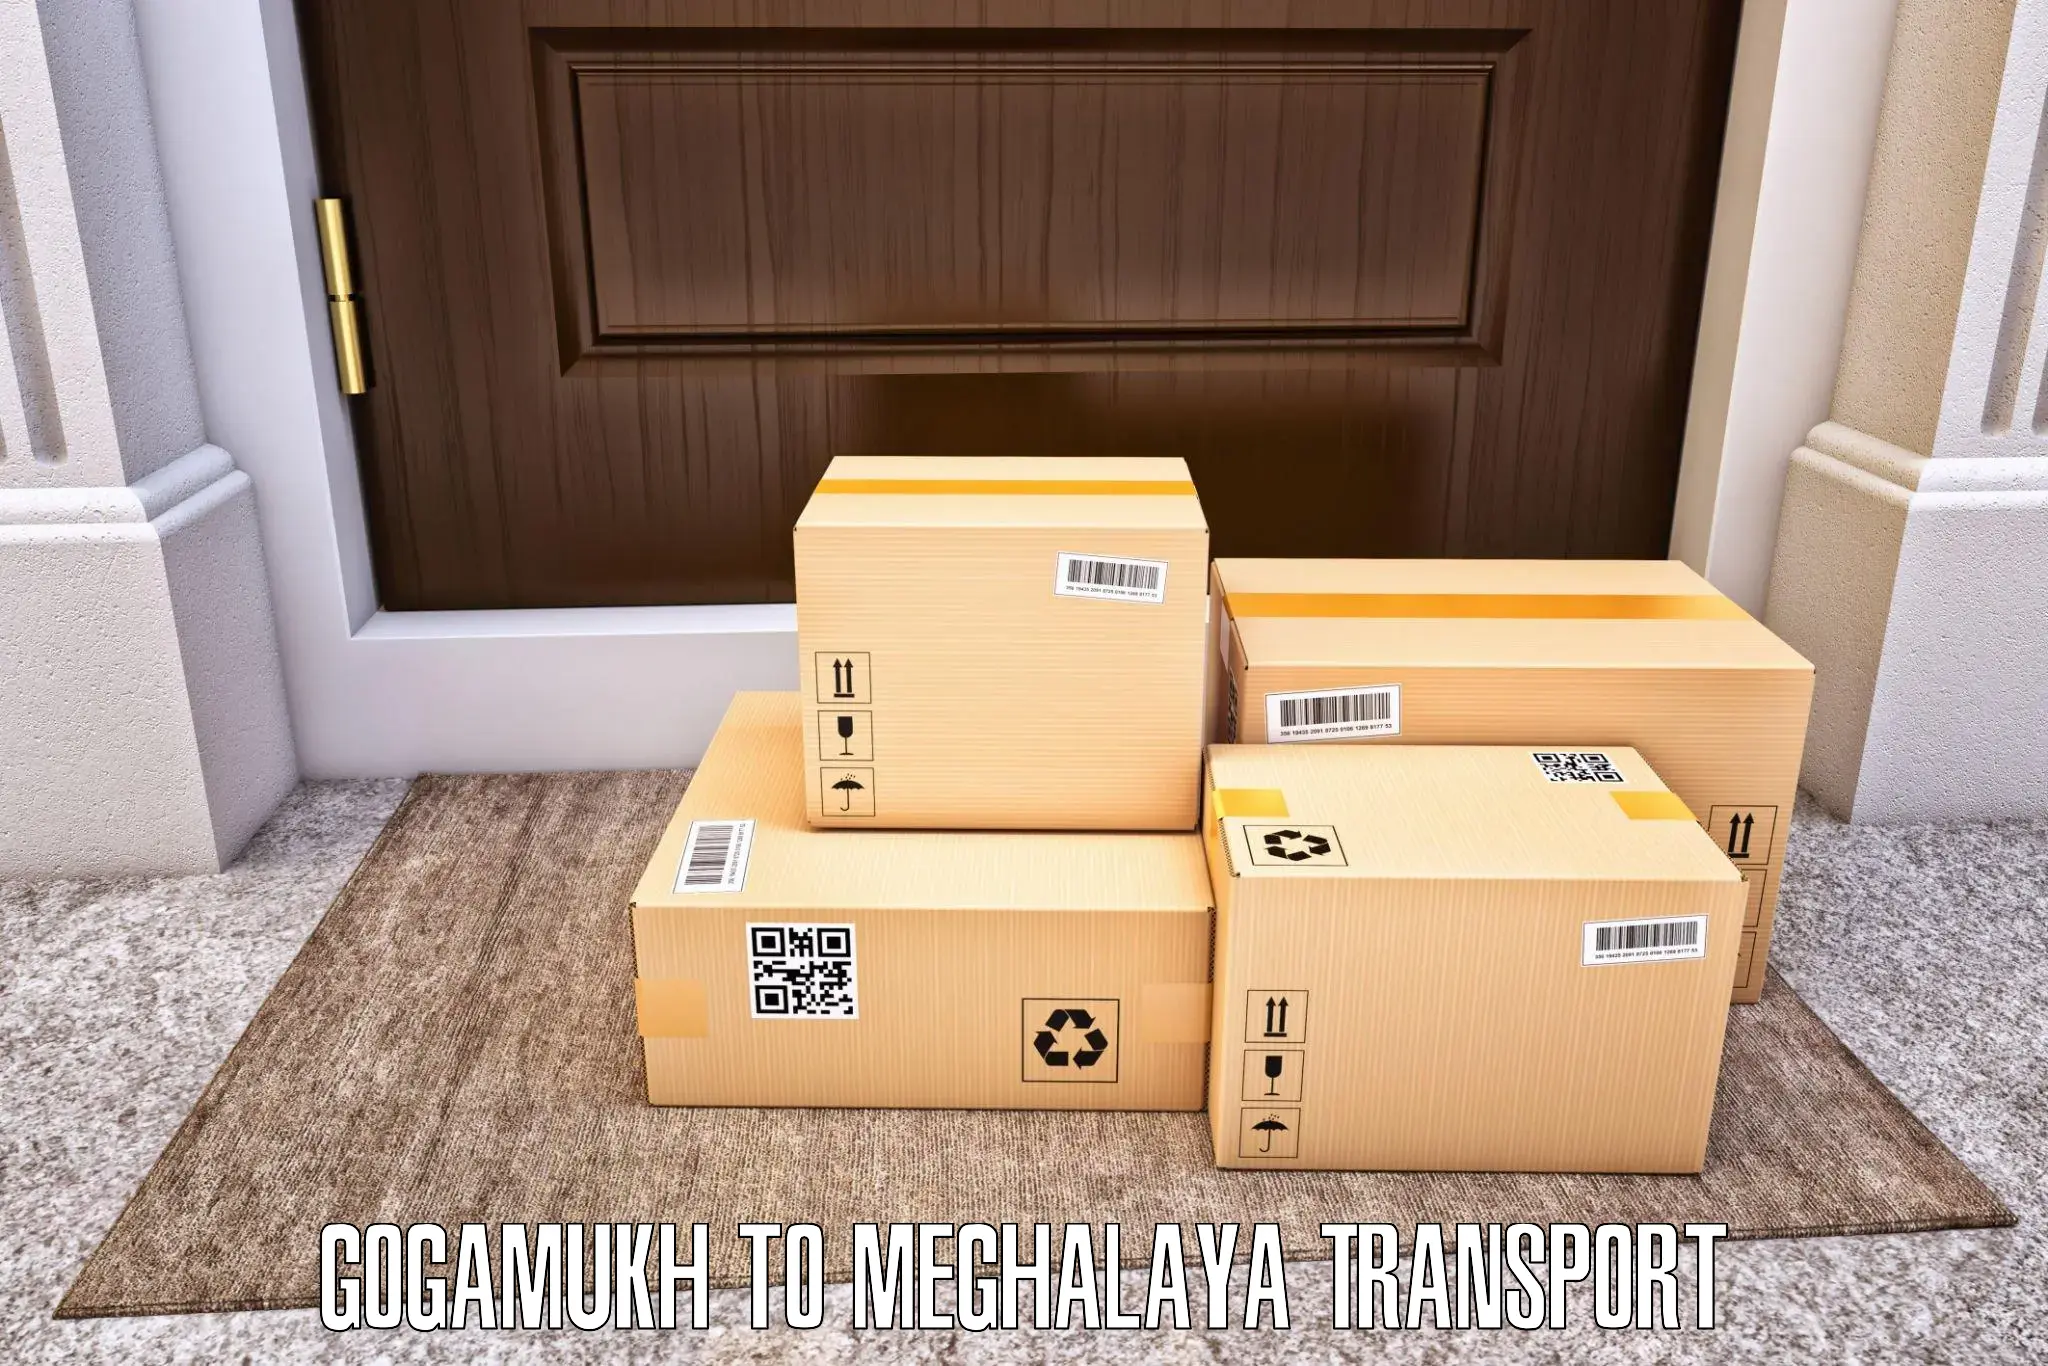 Luggage transport services Gogamukh to East Khasi Hills